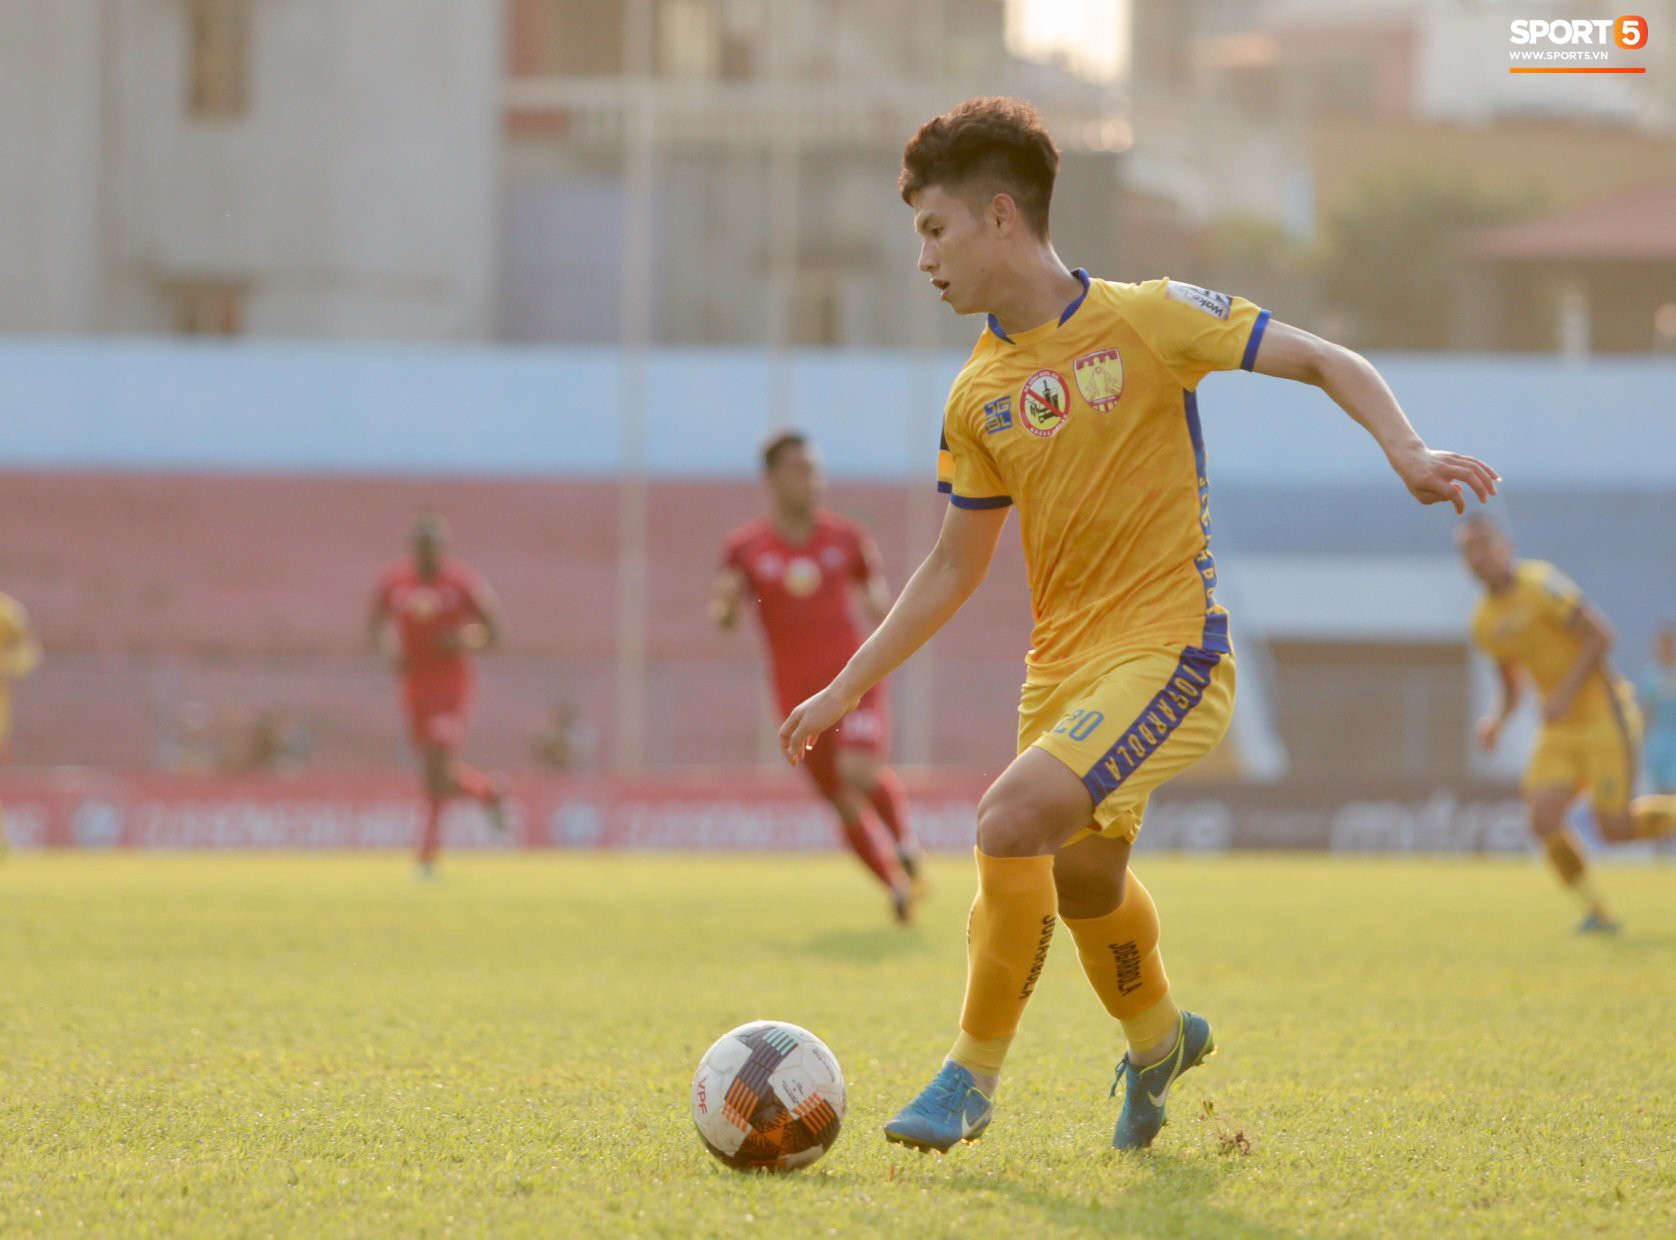 Đức Chinh dẹp tan nghi ngờ bằng bàn thắng vào lưới đội đầu bảng V.League, tân binh U23 tỏa sáng giúp Thanh Hóa nối dài chuỗi trận bất bại - Ảnh 1.